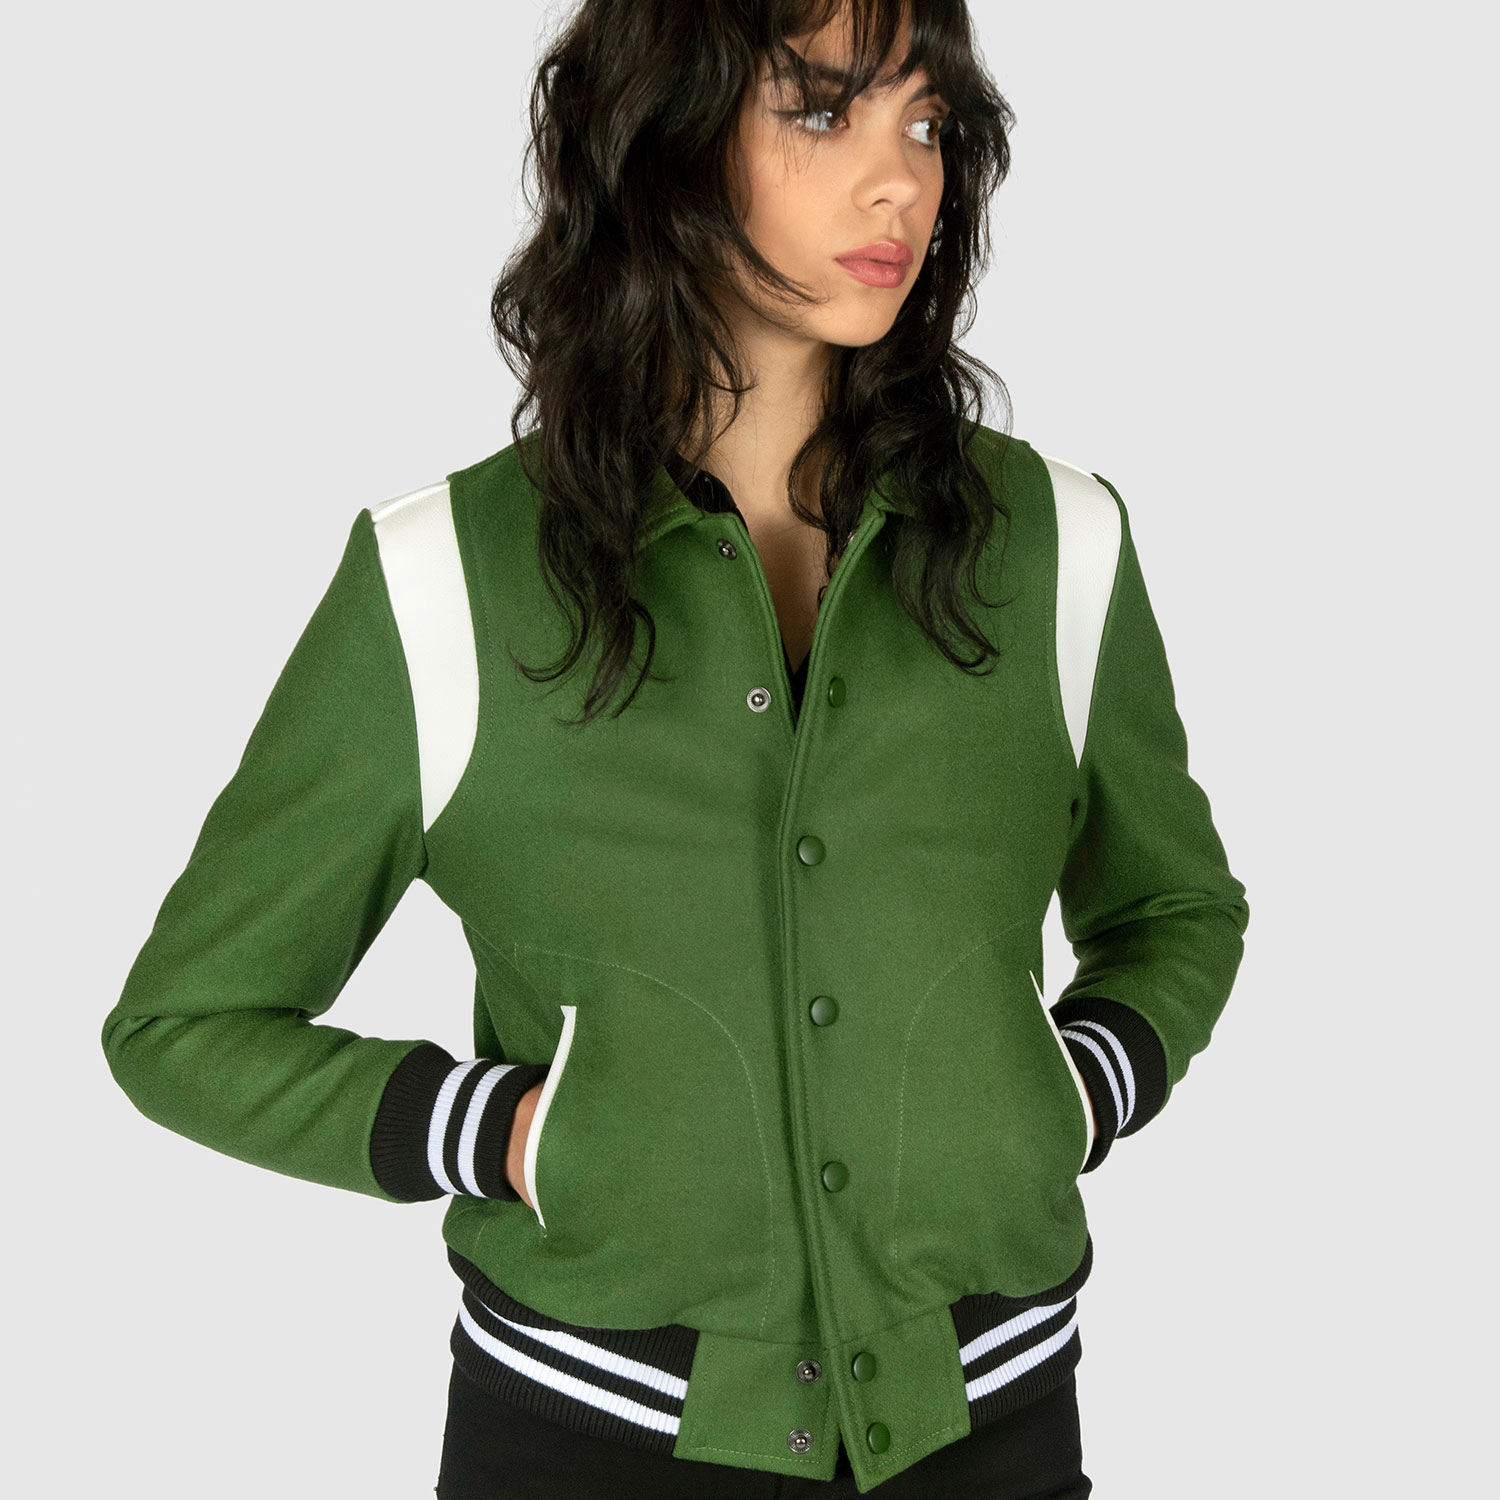 Straight to Hell Jet - Green Varsity Jacket